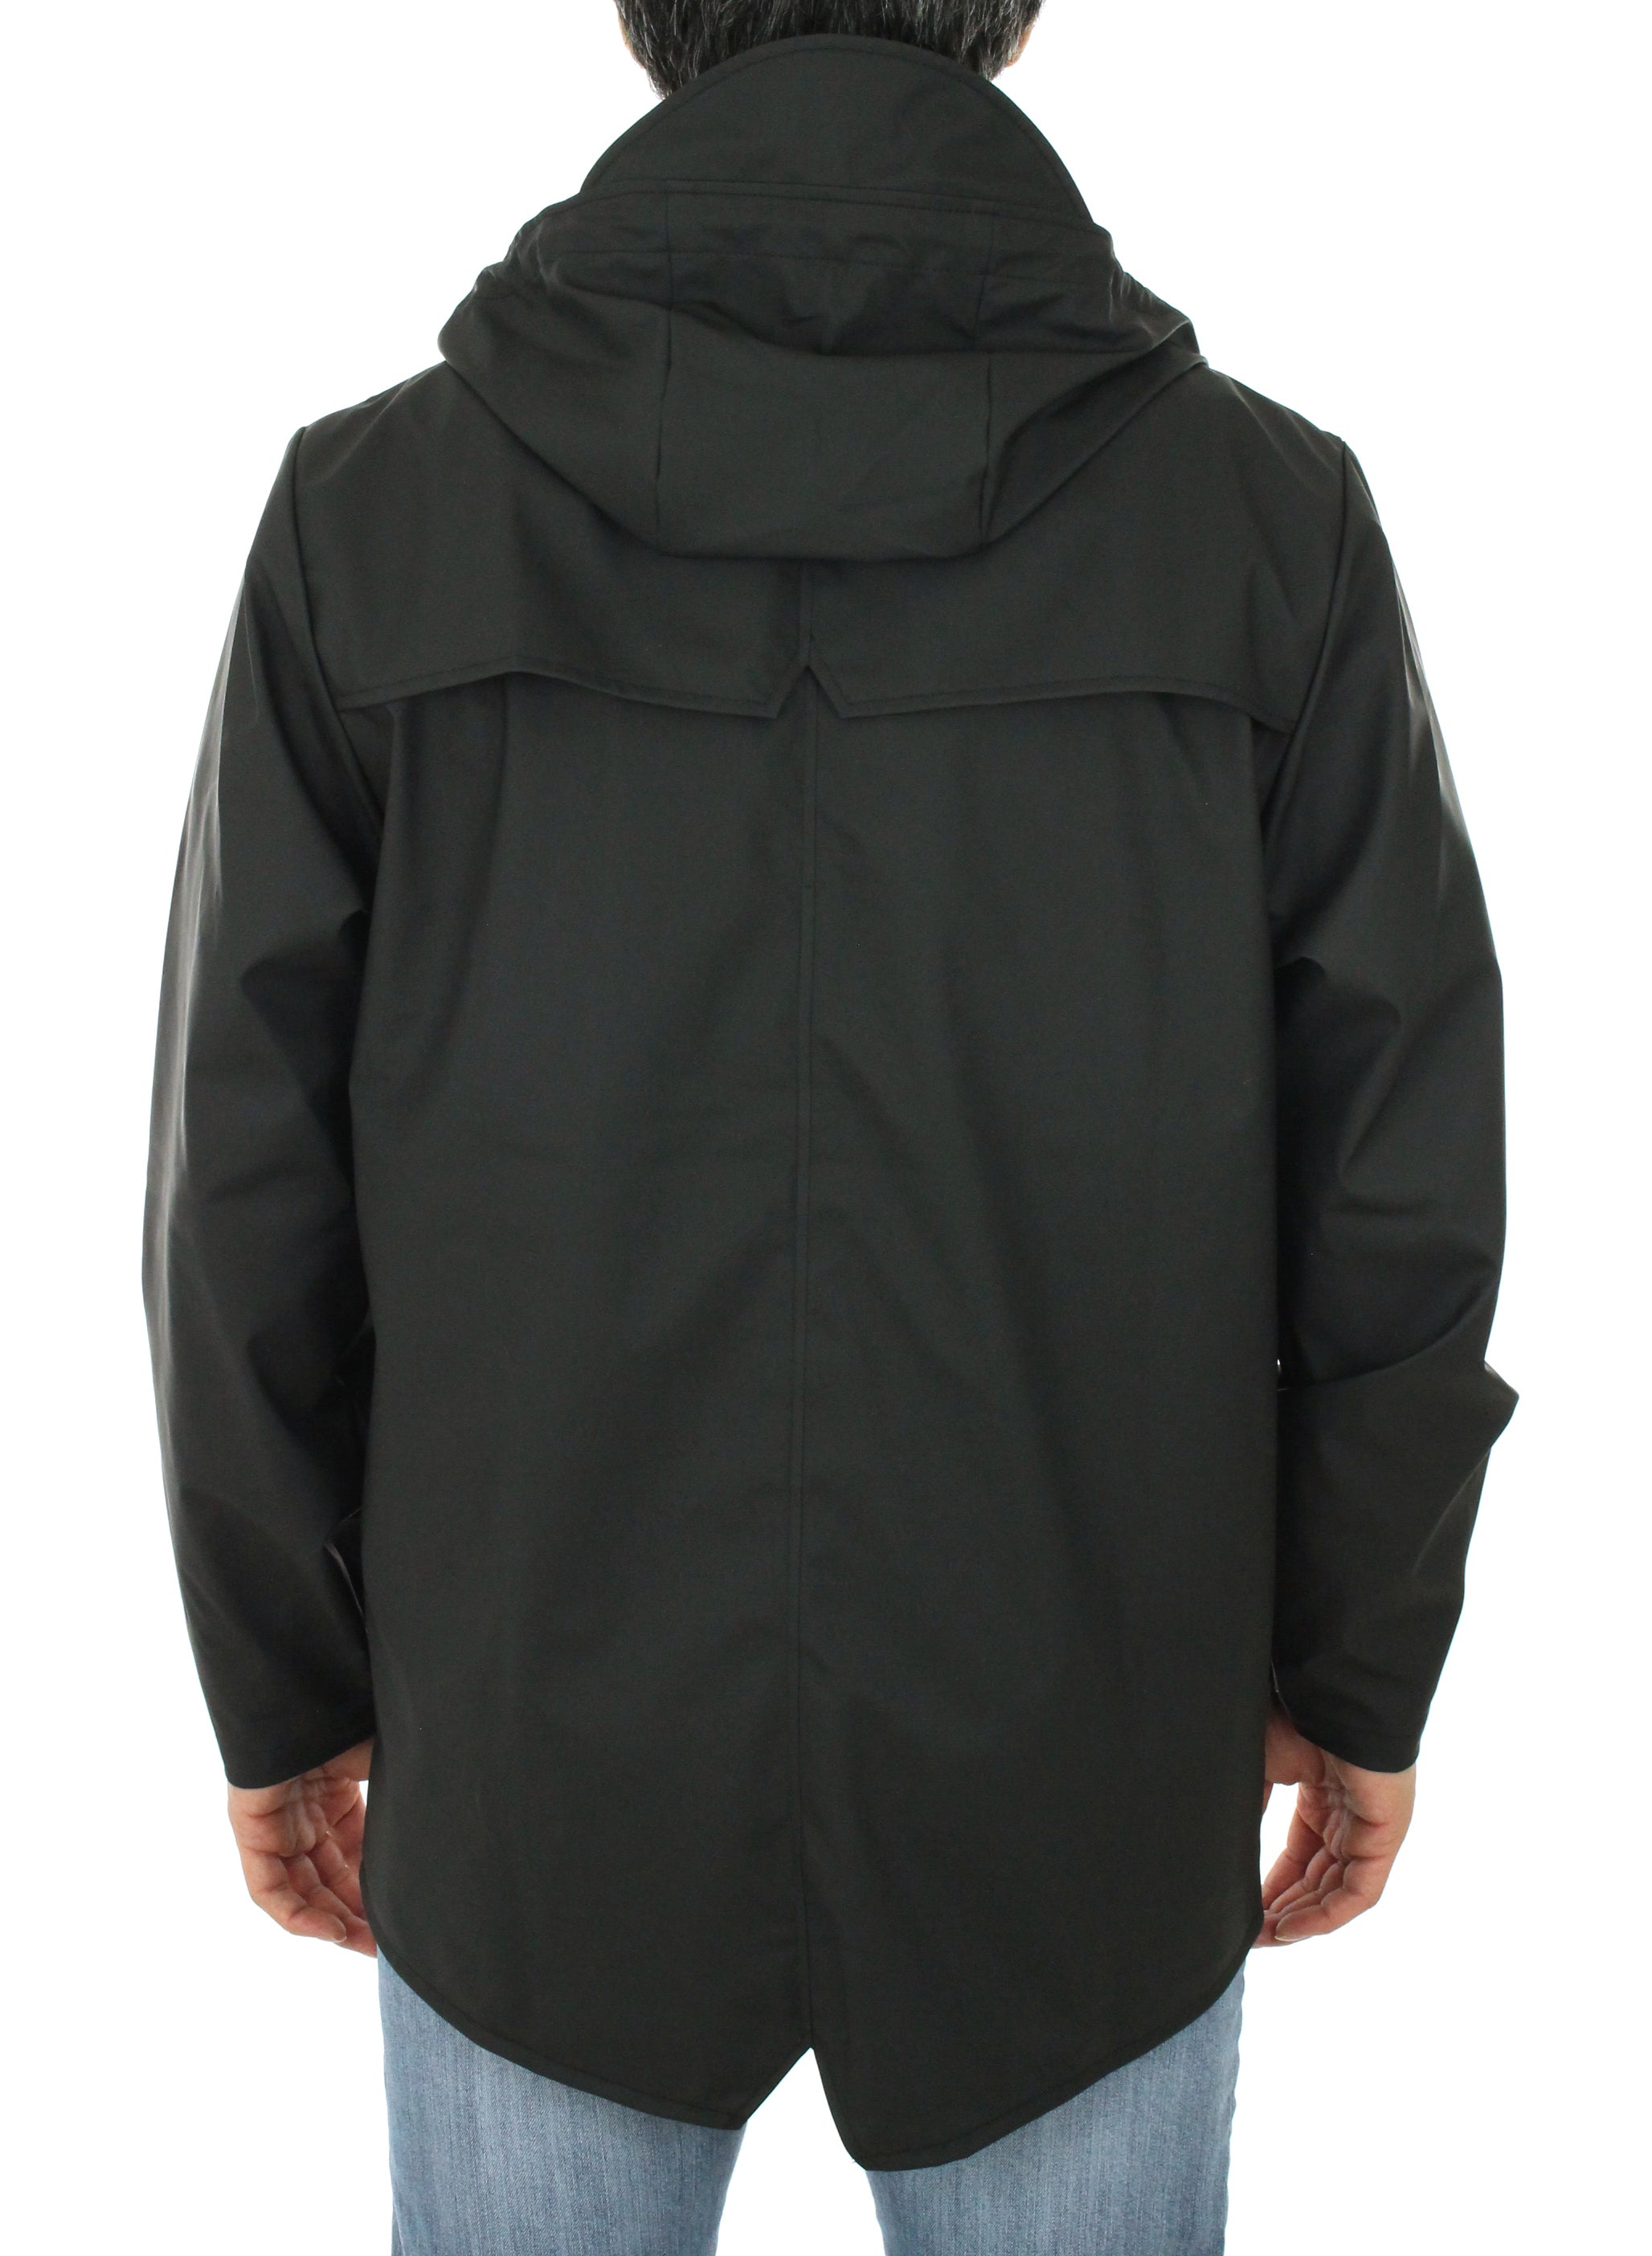 Waterproof Jacket Unisex 1201 black